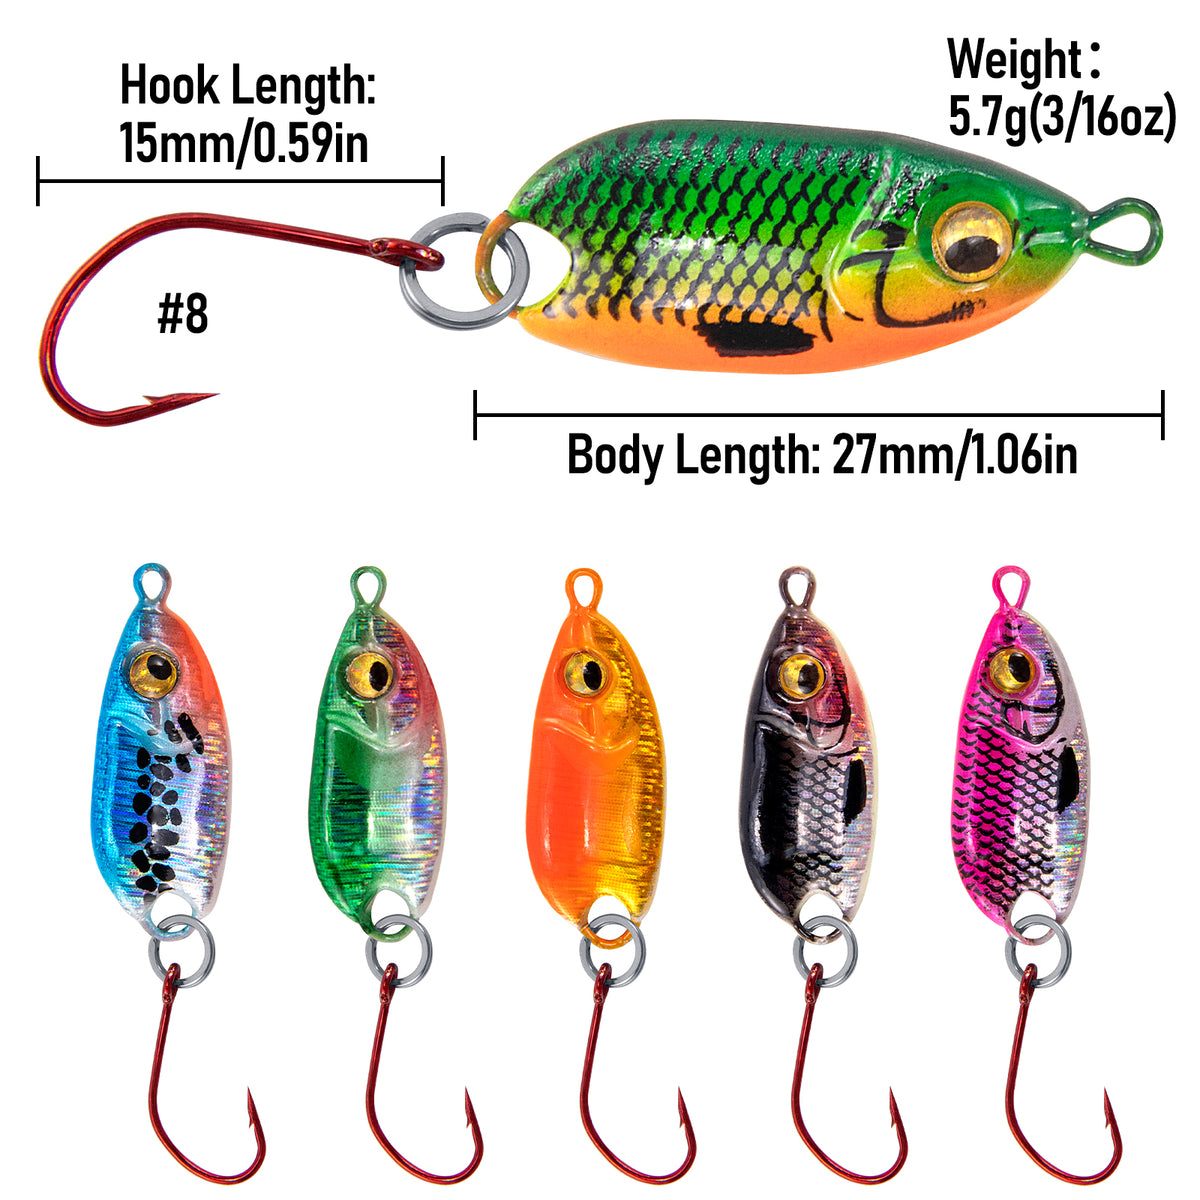 Dr.Fish 6pcs Micro Fishing Spoon Lure Kit 1" 3/16oz